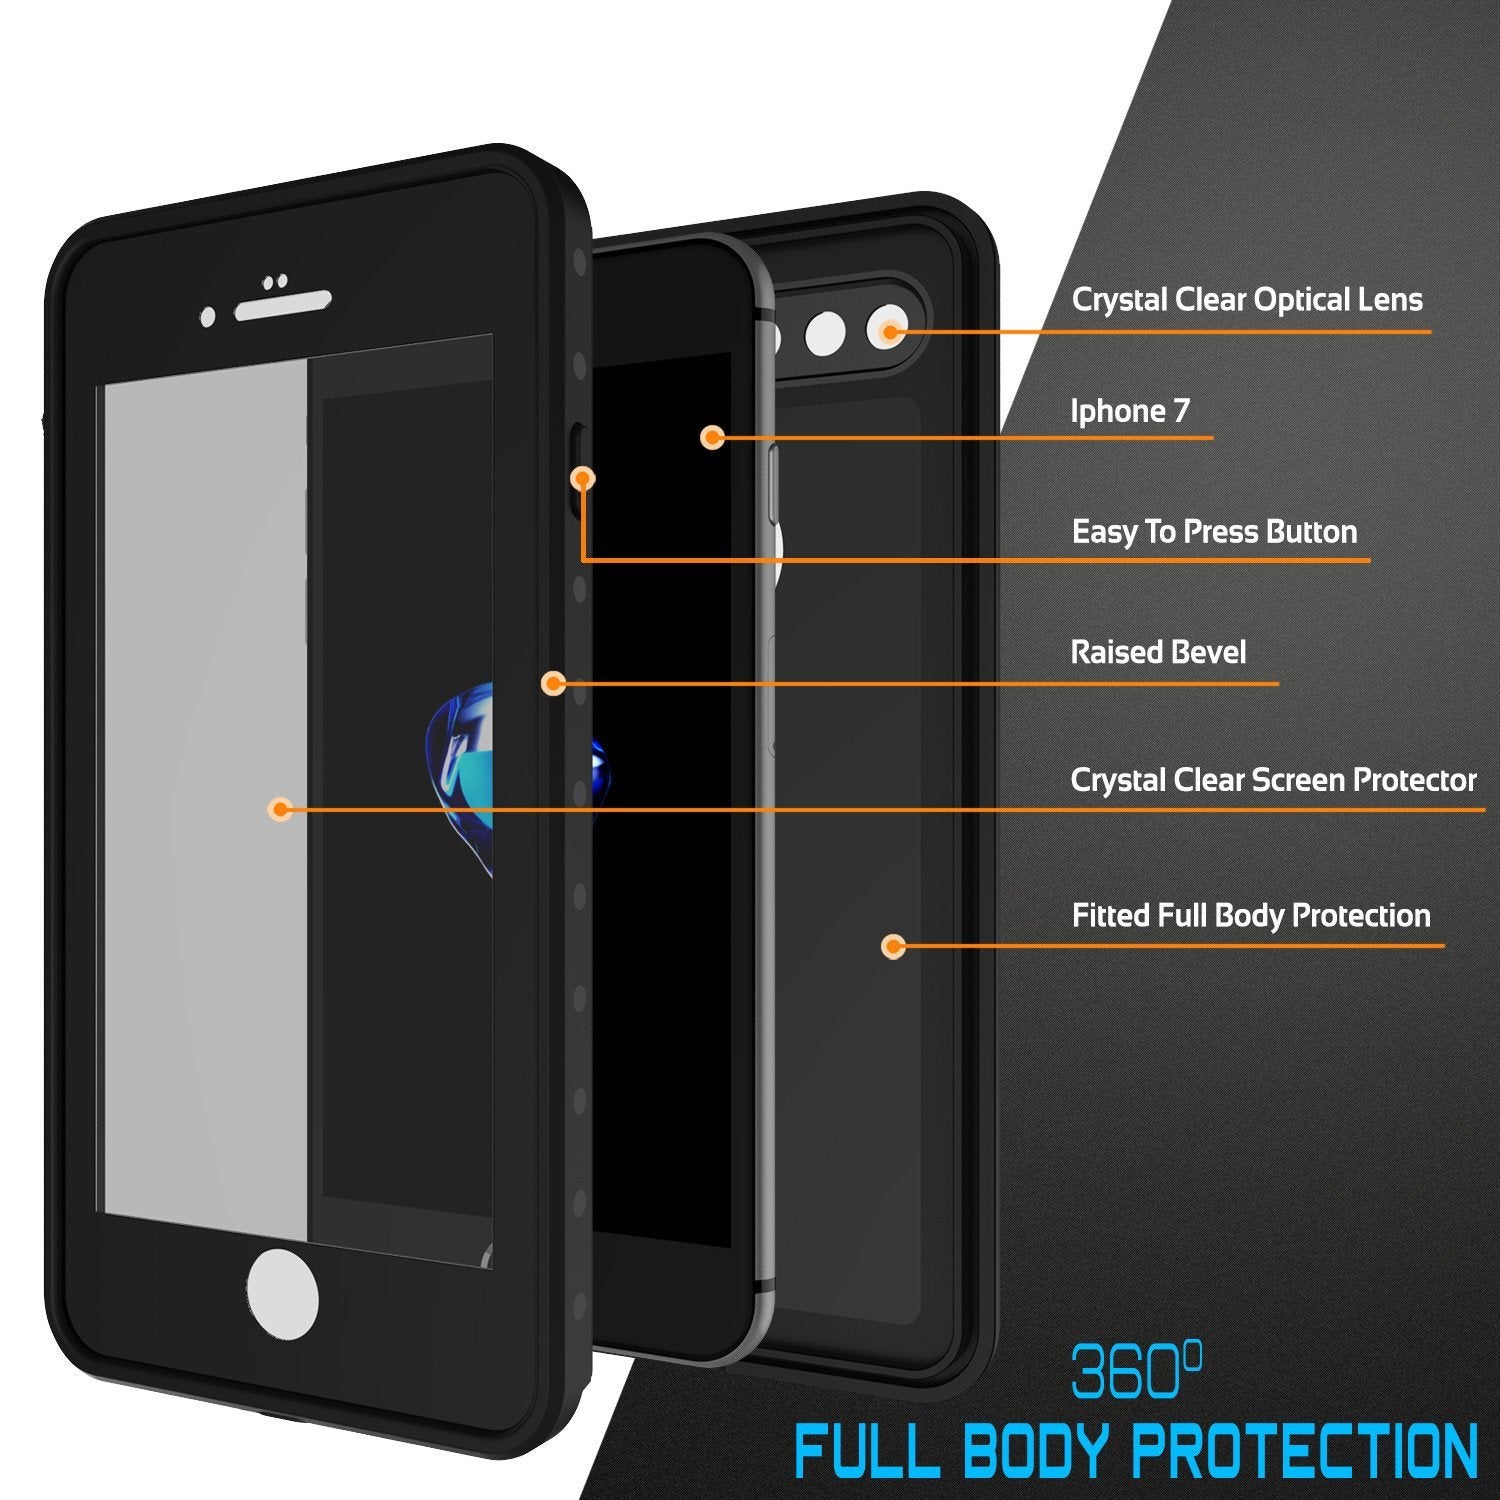 iPhone 8+ Plus Waterproof IP68 Case, Punkcase [Black] [StudStar Series] [Slim Fit] [Dirtproof] - PunkCase NZ